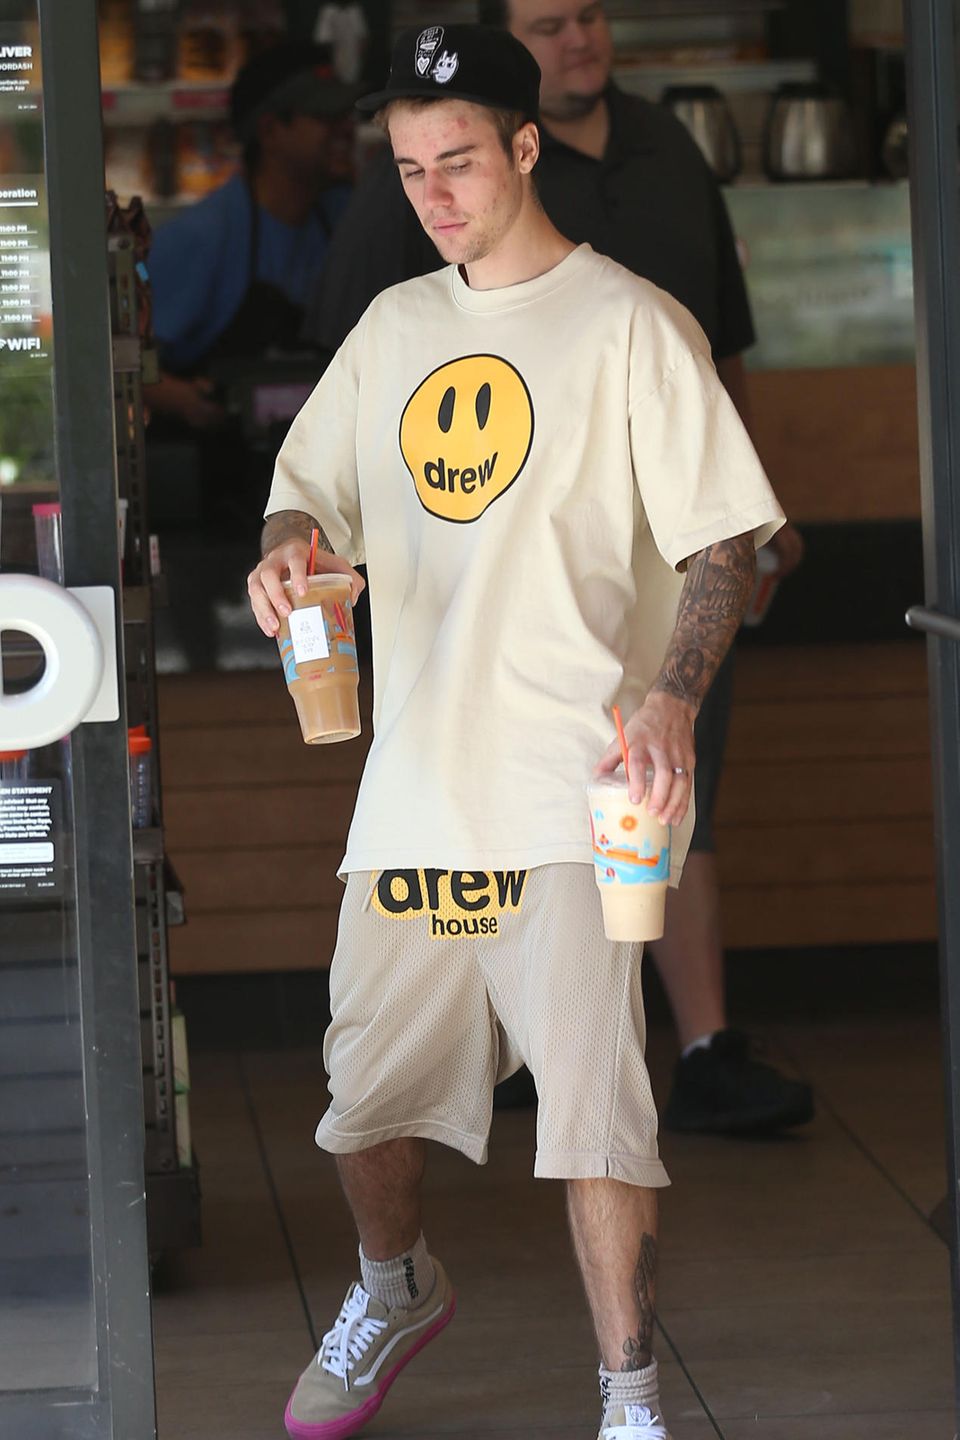 3. Juli 2019   Die strahlend weiße Unterhose gehört zu keinem Geringeren als Justin Bieber. Der für seine tief hängenden Hosen bekannte Sänger wird beim Kaufen von Getränken abgelichtet.